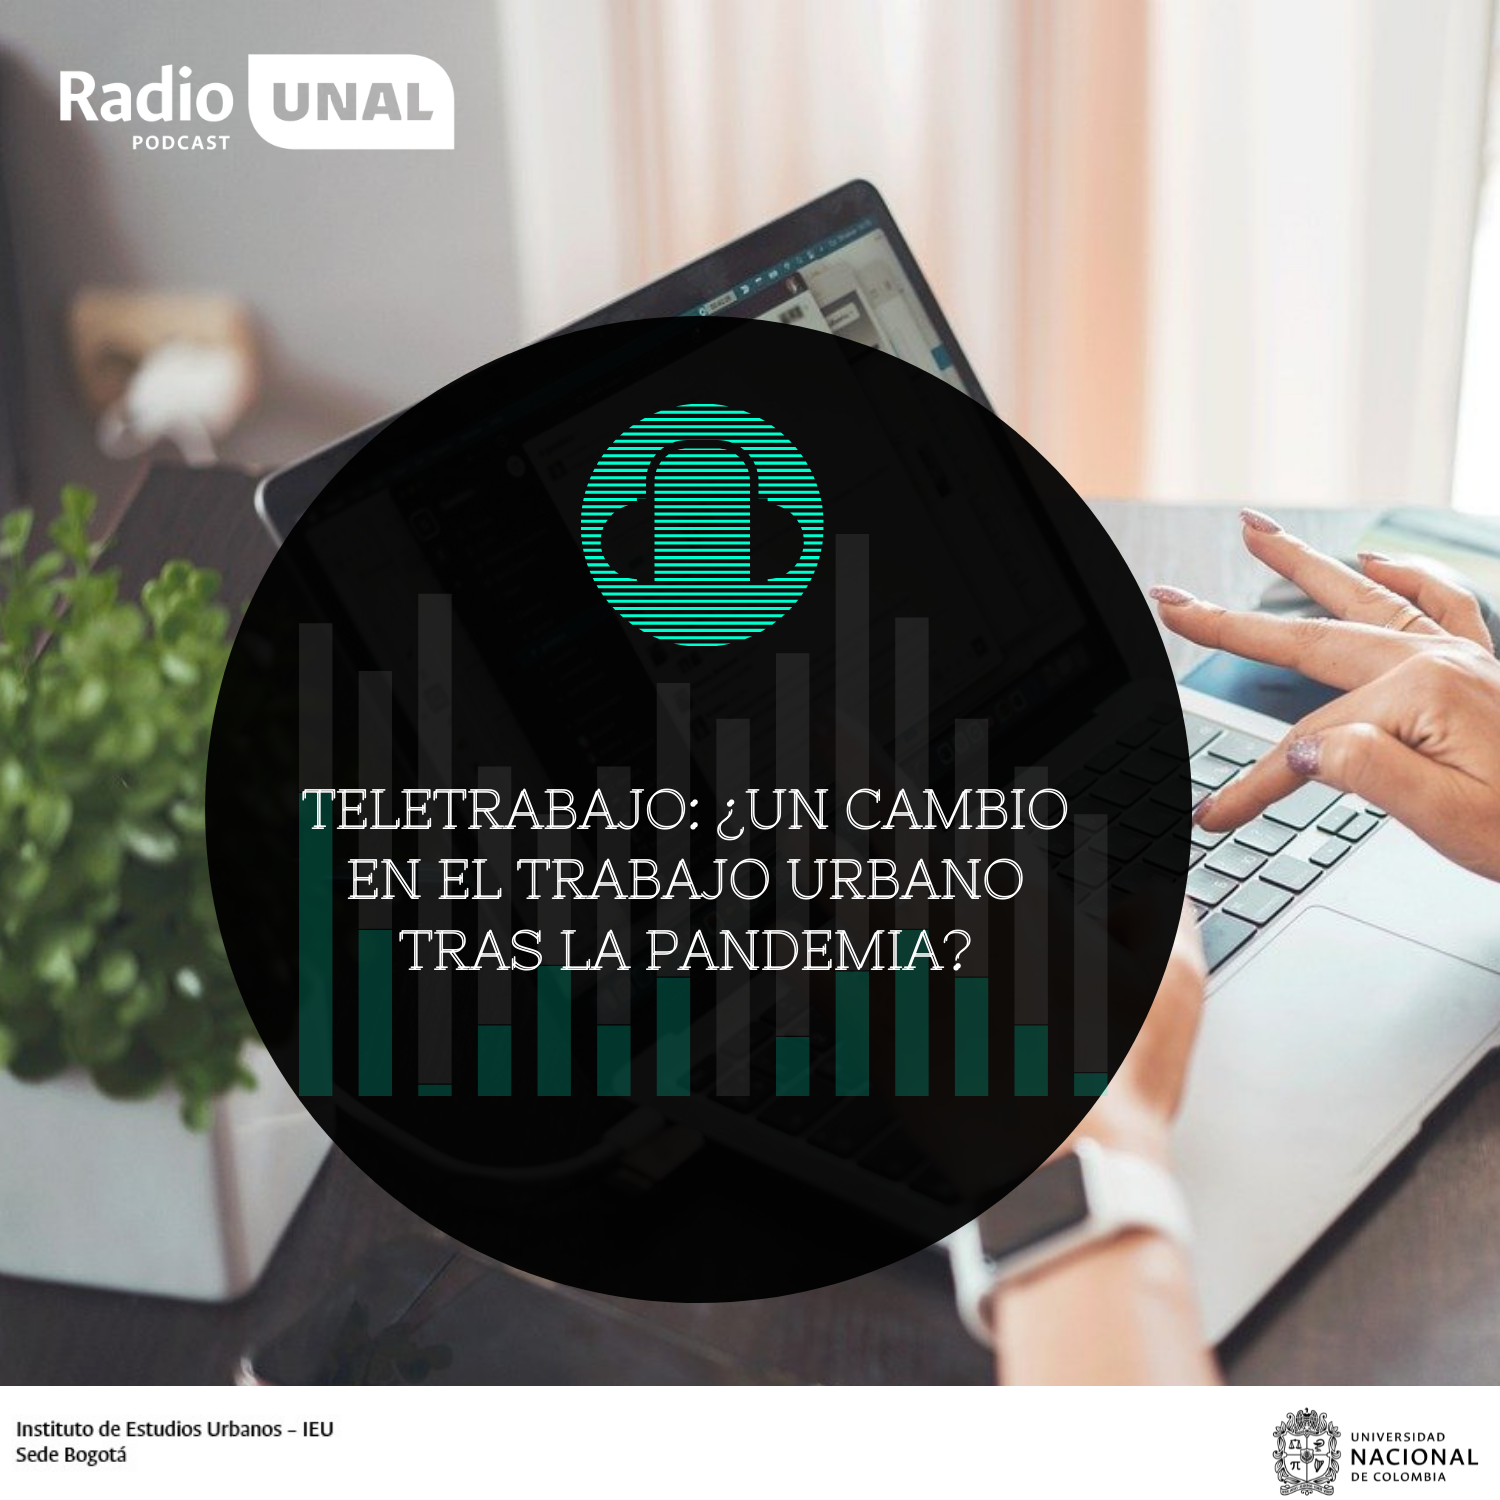 #PodcastRadioUNAL Teletrabajo: ¿Un cambio en el trabajo urbano tras la pandemia?